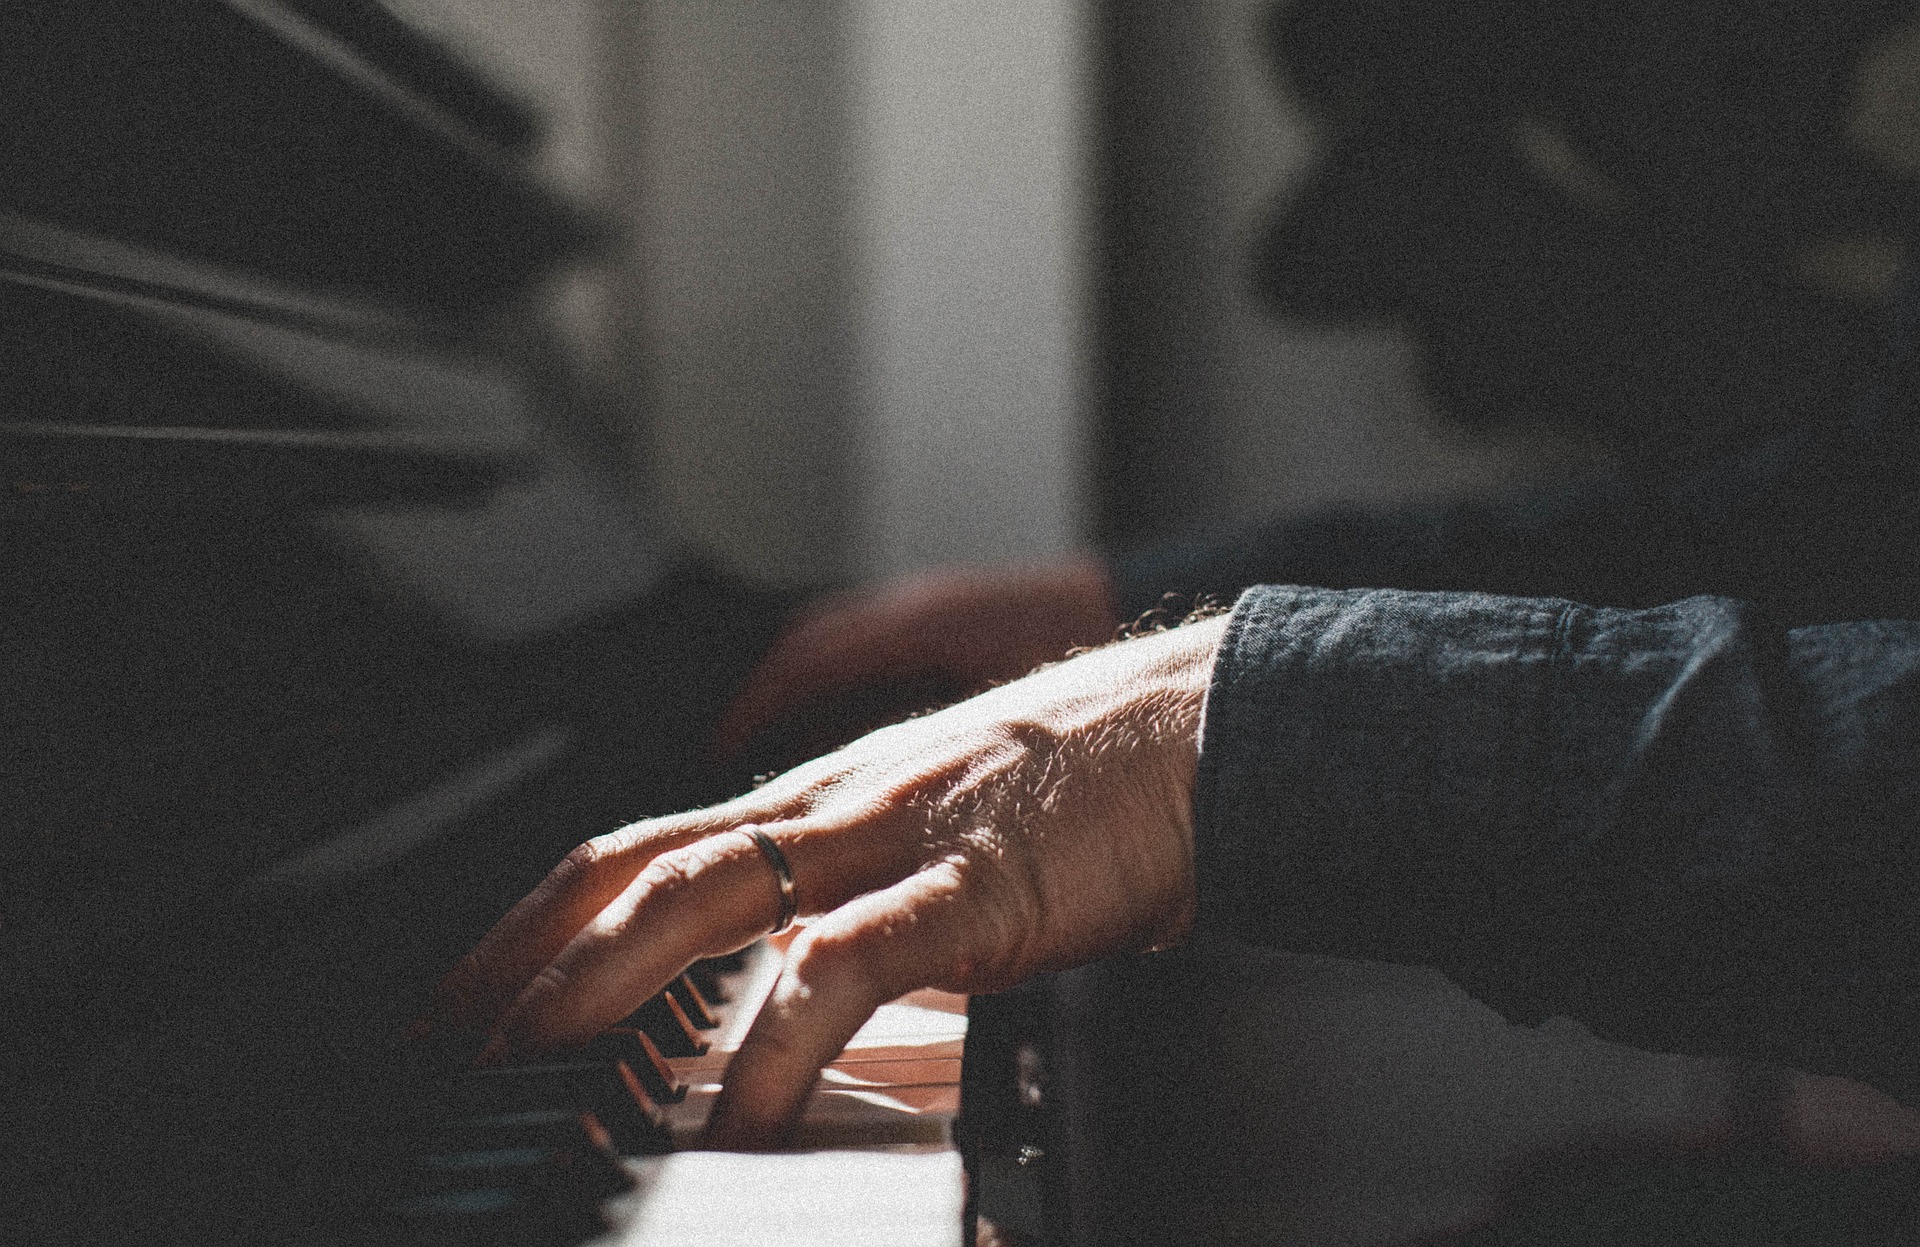 des mains d'homme âgé sur les touches d'un piano (immage d'illustration) - Image par StockSnap de https://pixabay.com/fr/photos/gens-main-anneau-piano-organe-2559371/